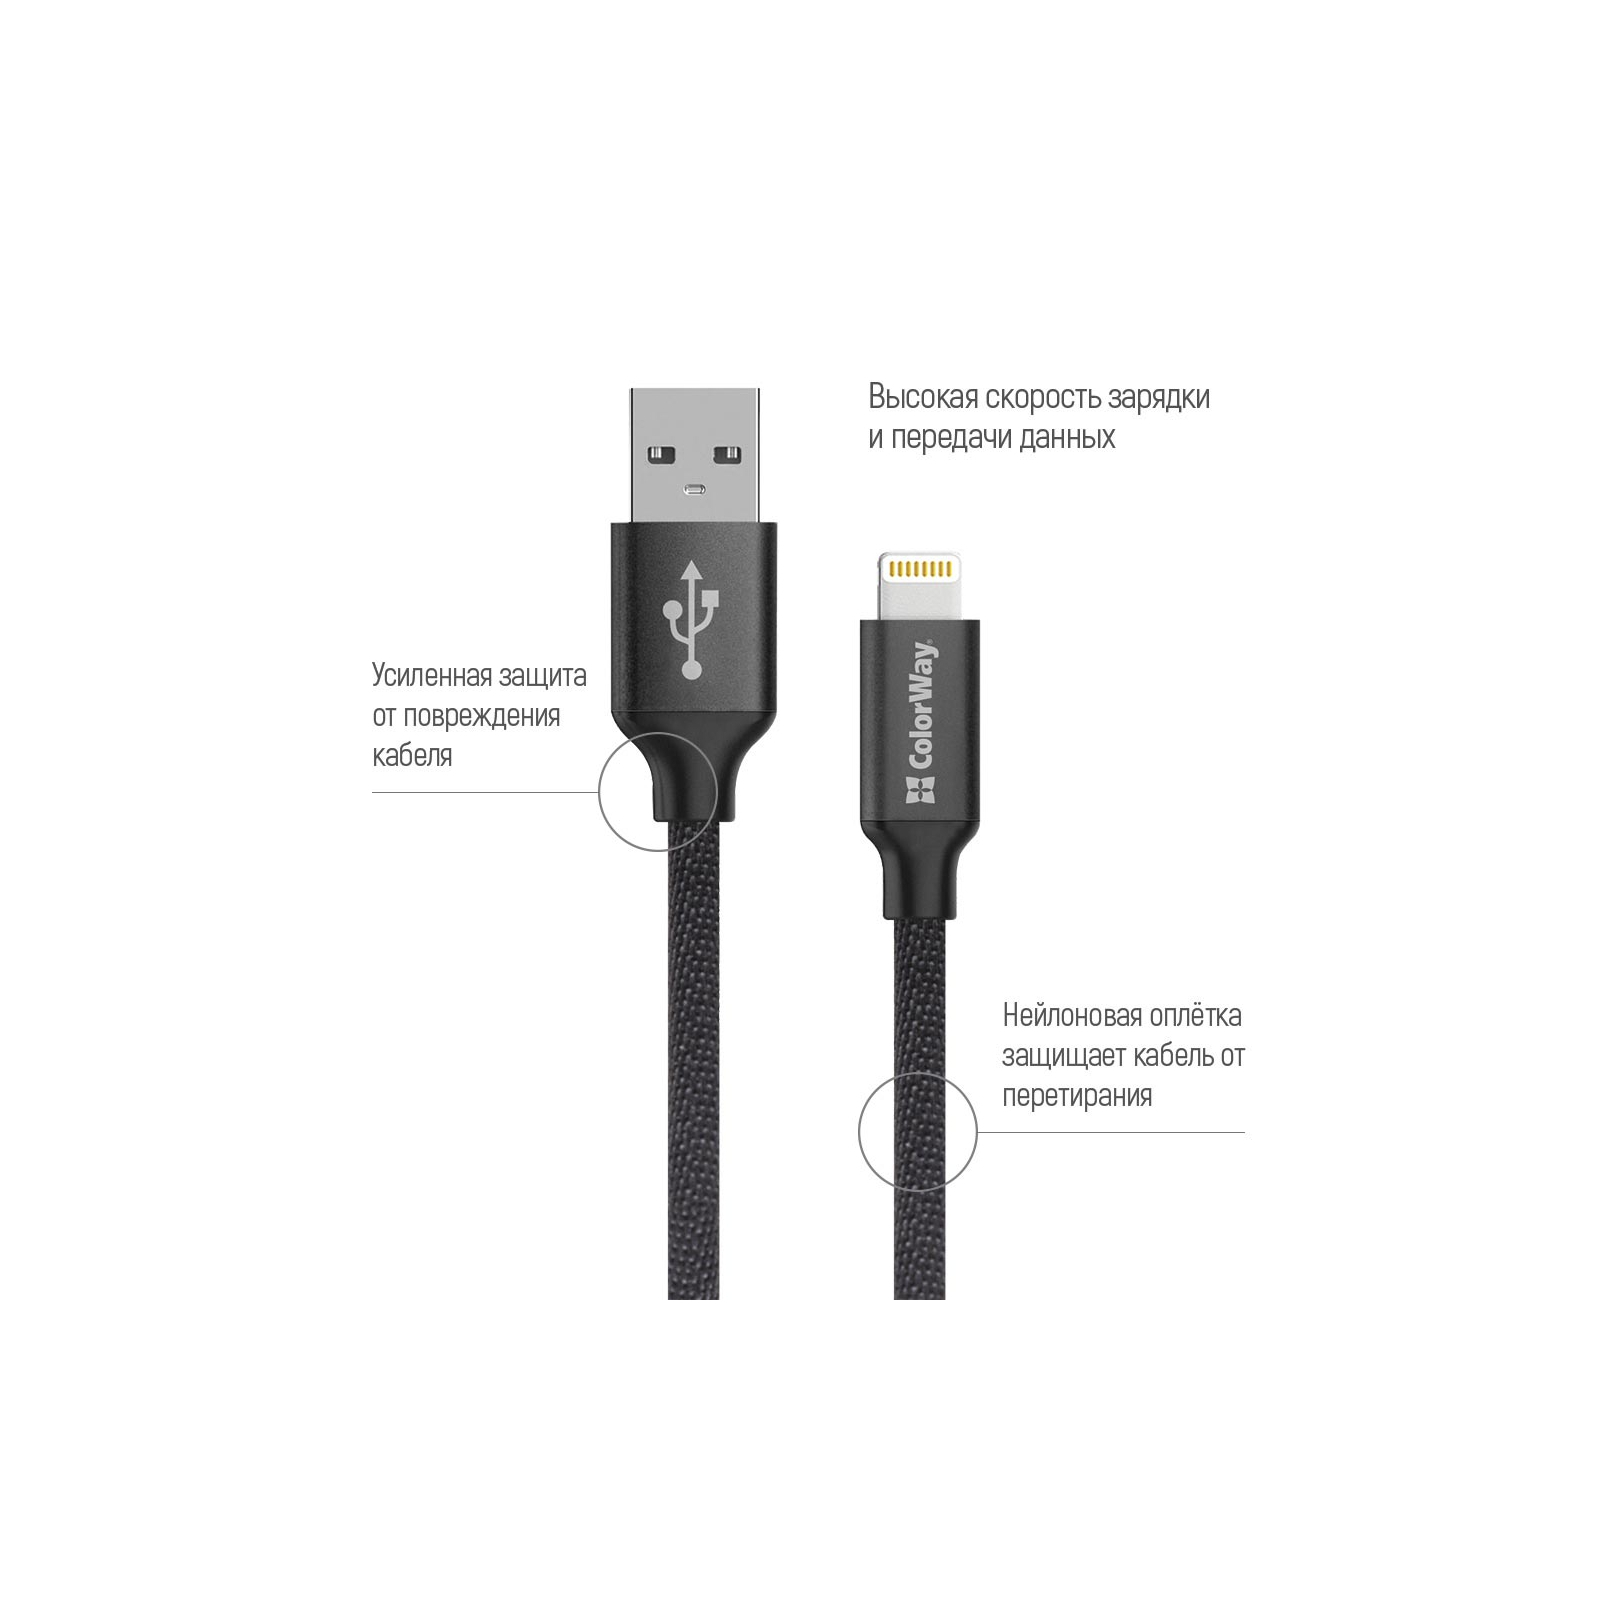 Дата кабель USB 2.0 AM to Lightning 2.0m red ColorWay (CW-CBUL007-RD) изображение 2